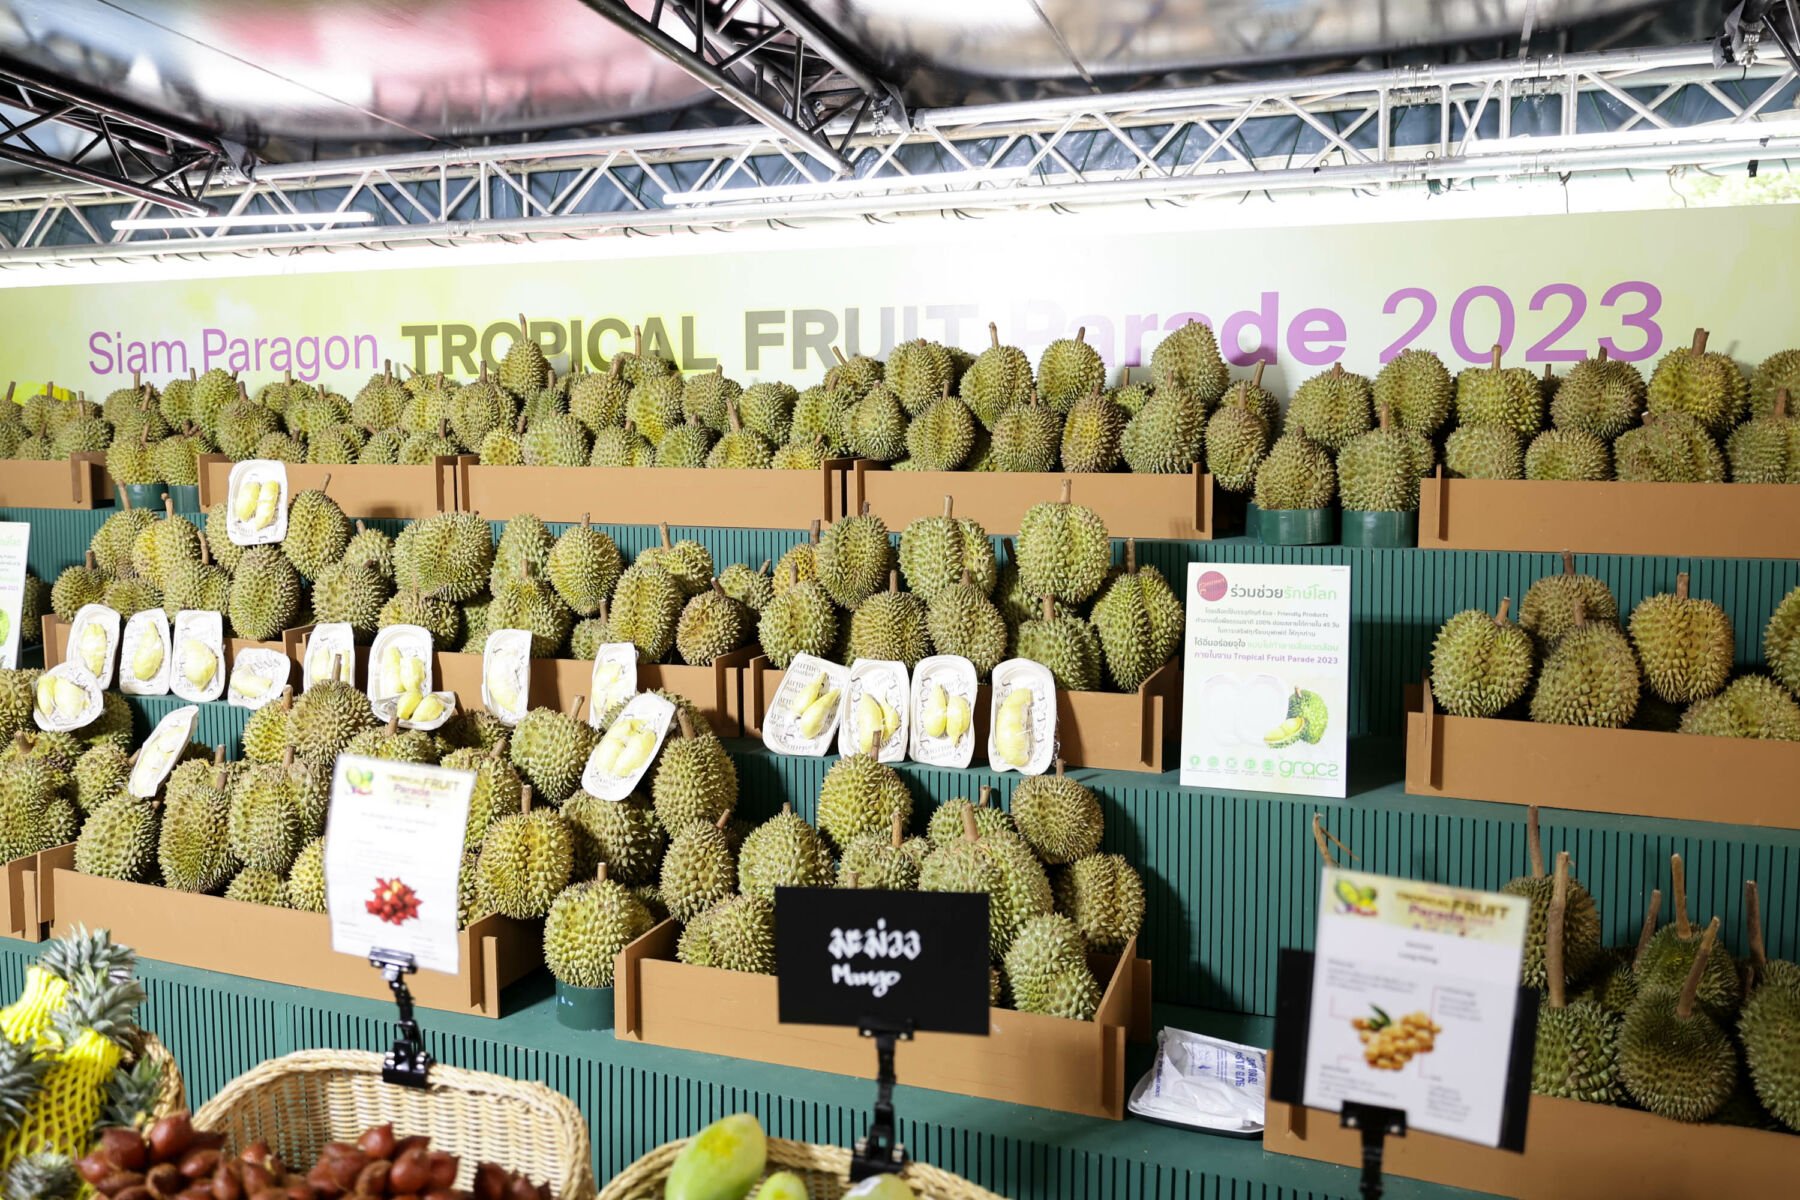 Siam paragon fruit